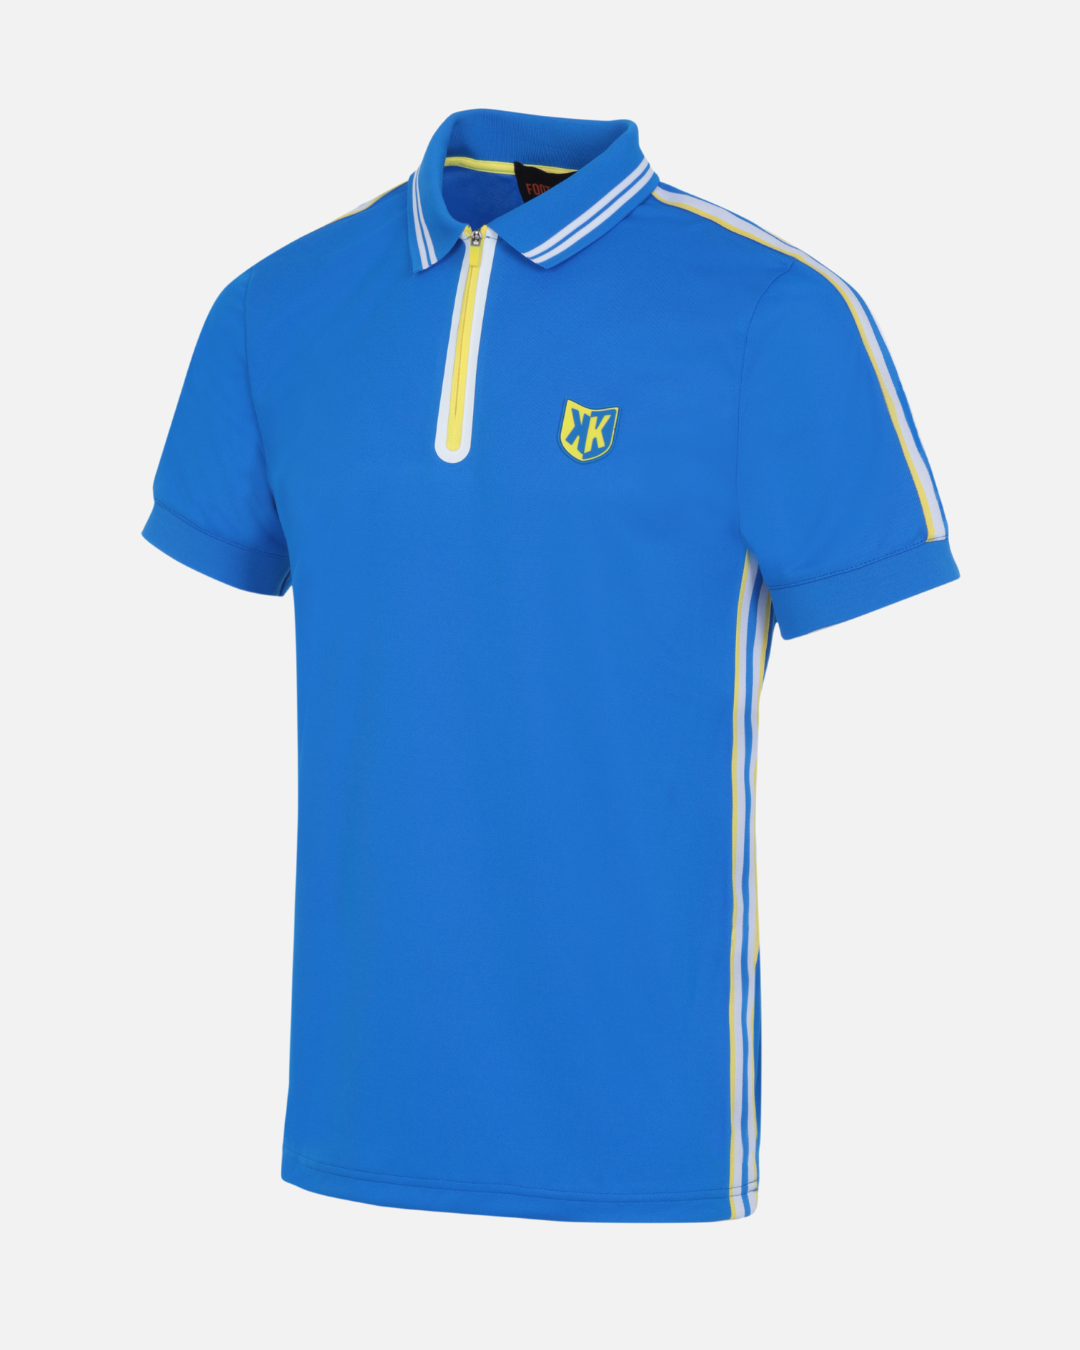 FK Teams Polo Shirt - Royal Blue/White/Yellow 